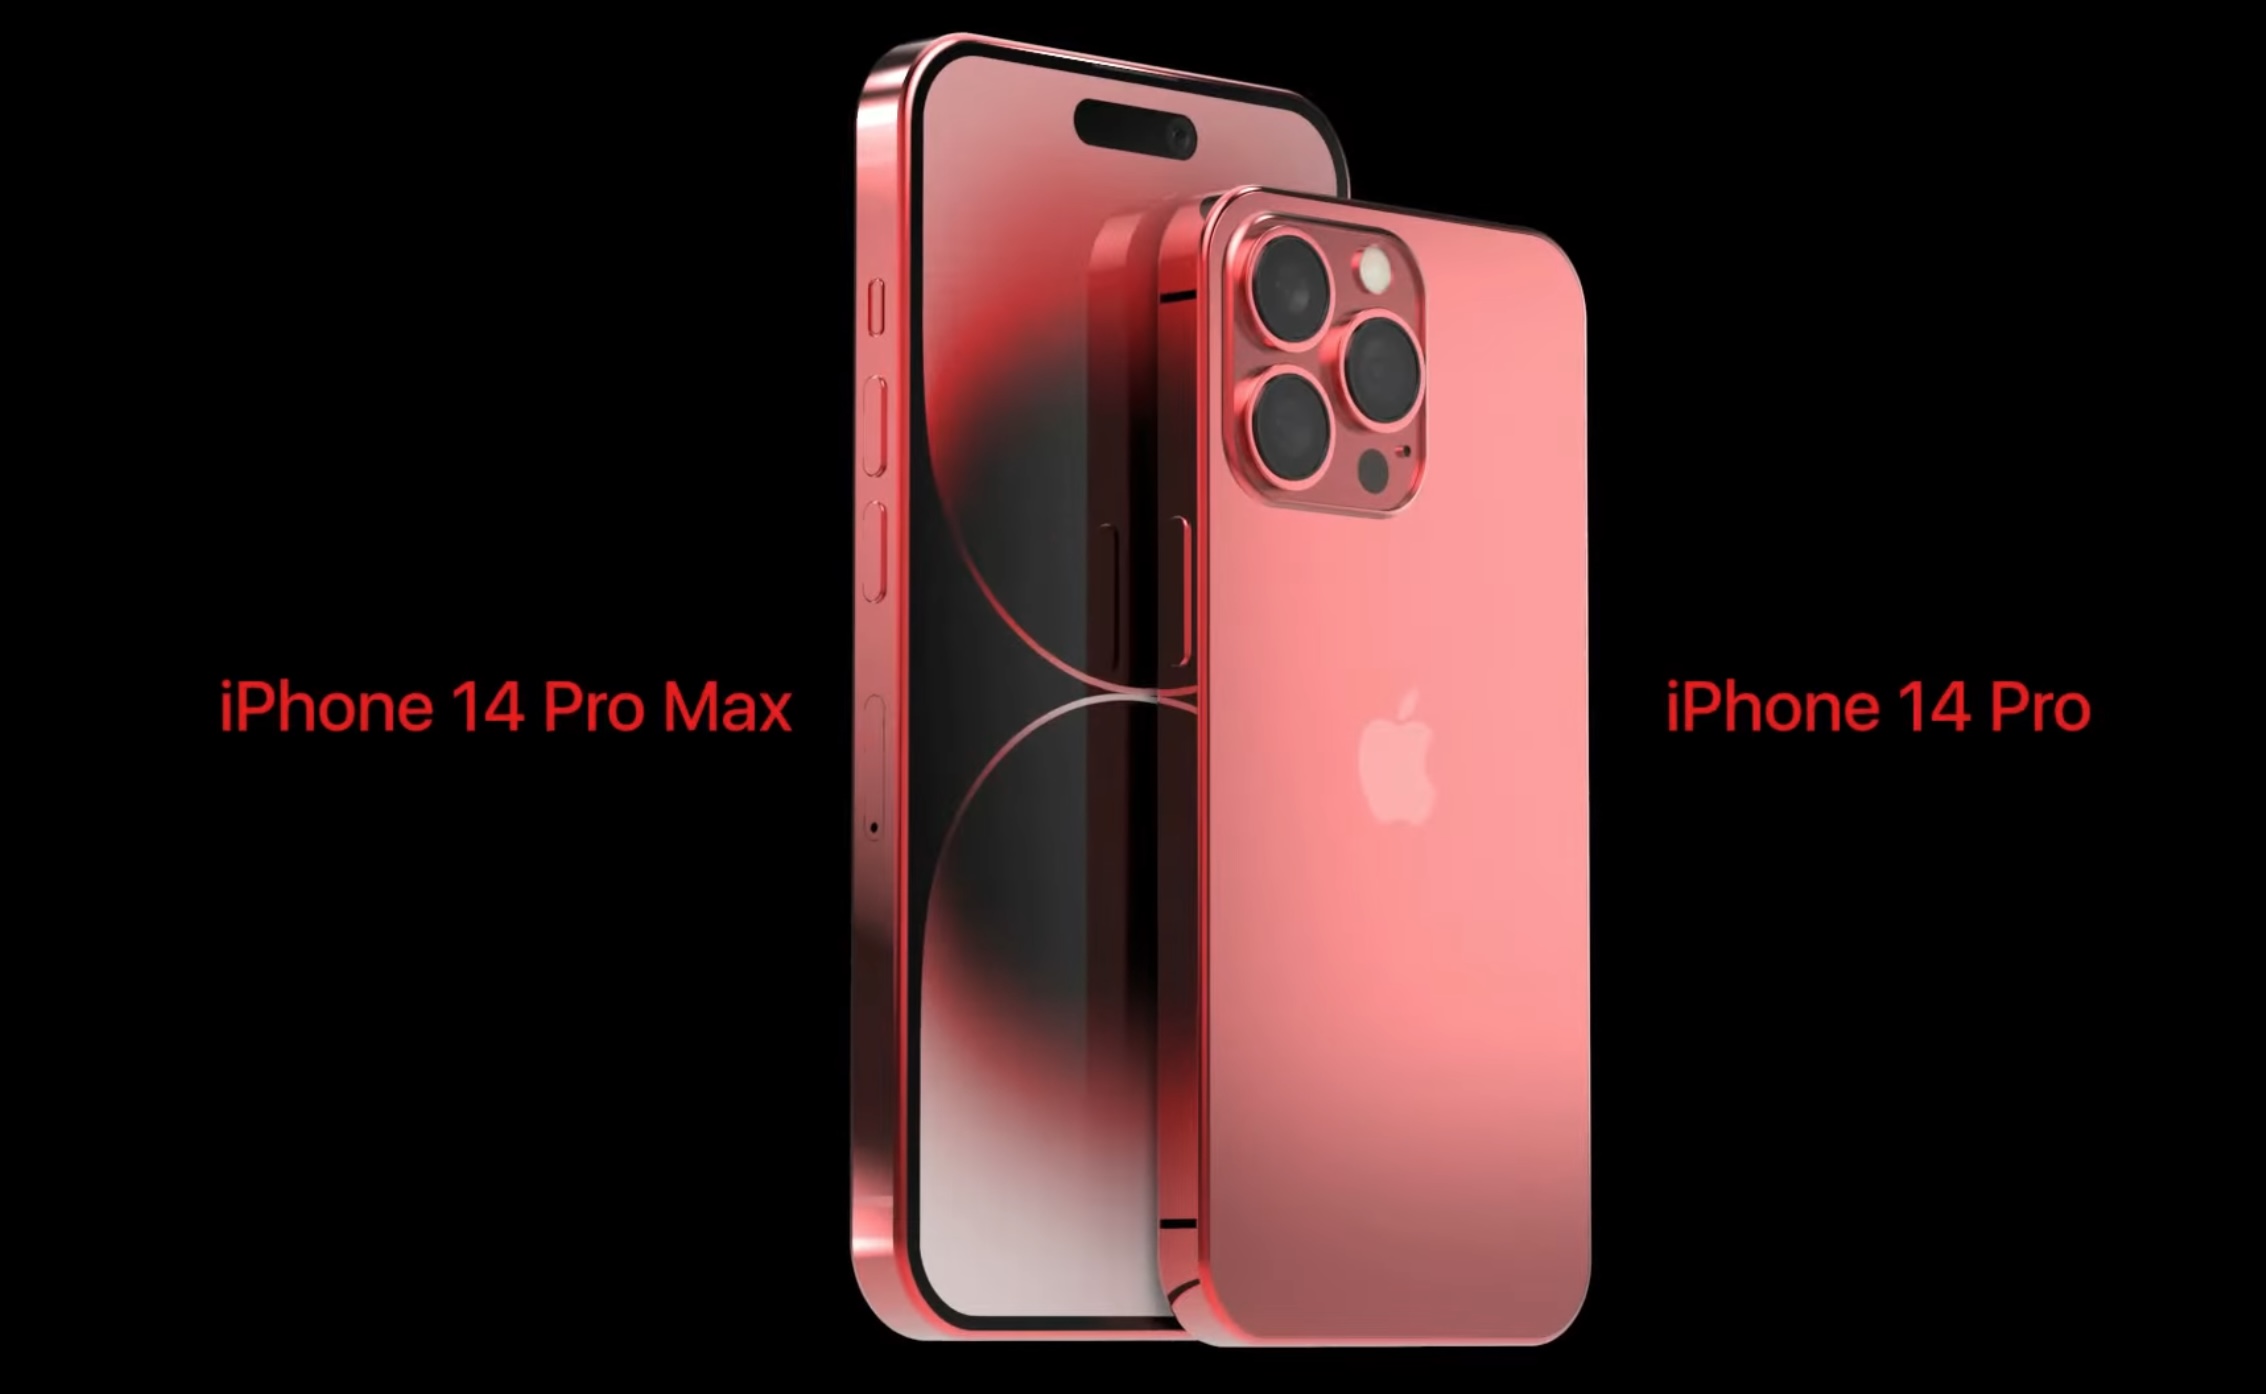 Choáng ngợp với màu đỏ tinh tế của iPhone 14 Pro Max! Thiết kế sang trọng cùng khả năng chụp ảnh và quay phim đỉnh cao, sản phẩm này được đánh giá là thú vị đối với những người yêu công nghệ. Hãy cùng chiêm ngưỡng hình ảnh của iPhone 14 Pro Max màu đỏ để đắm chìm trong không gian cực kì ấn tượng nhé!